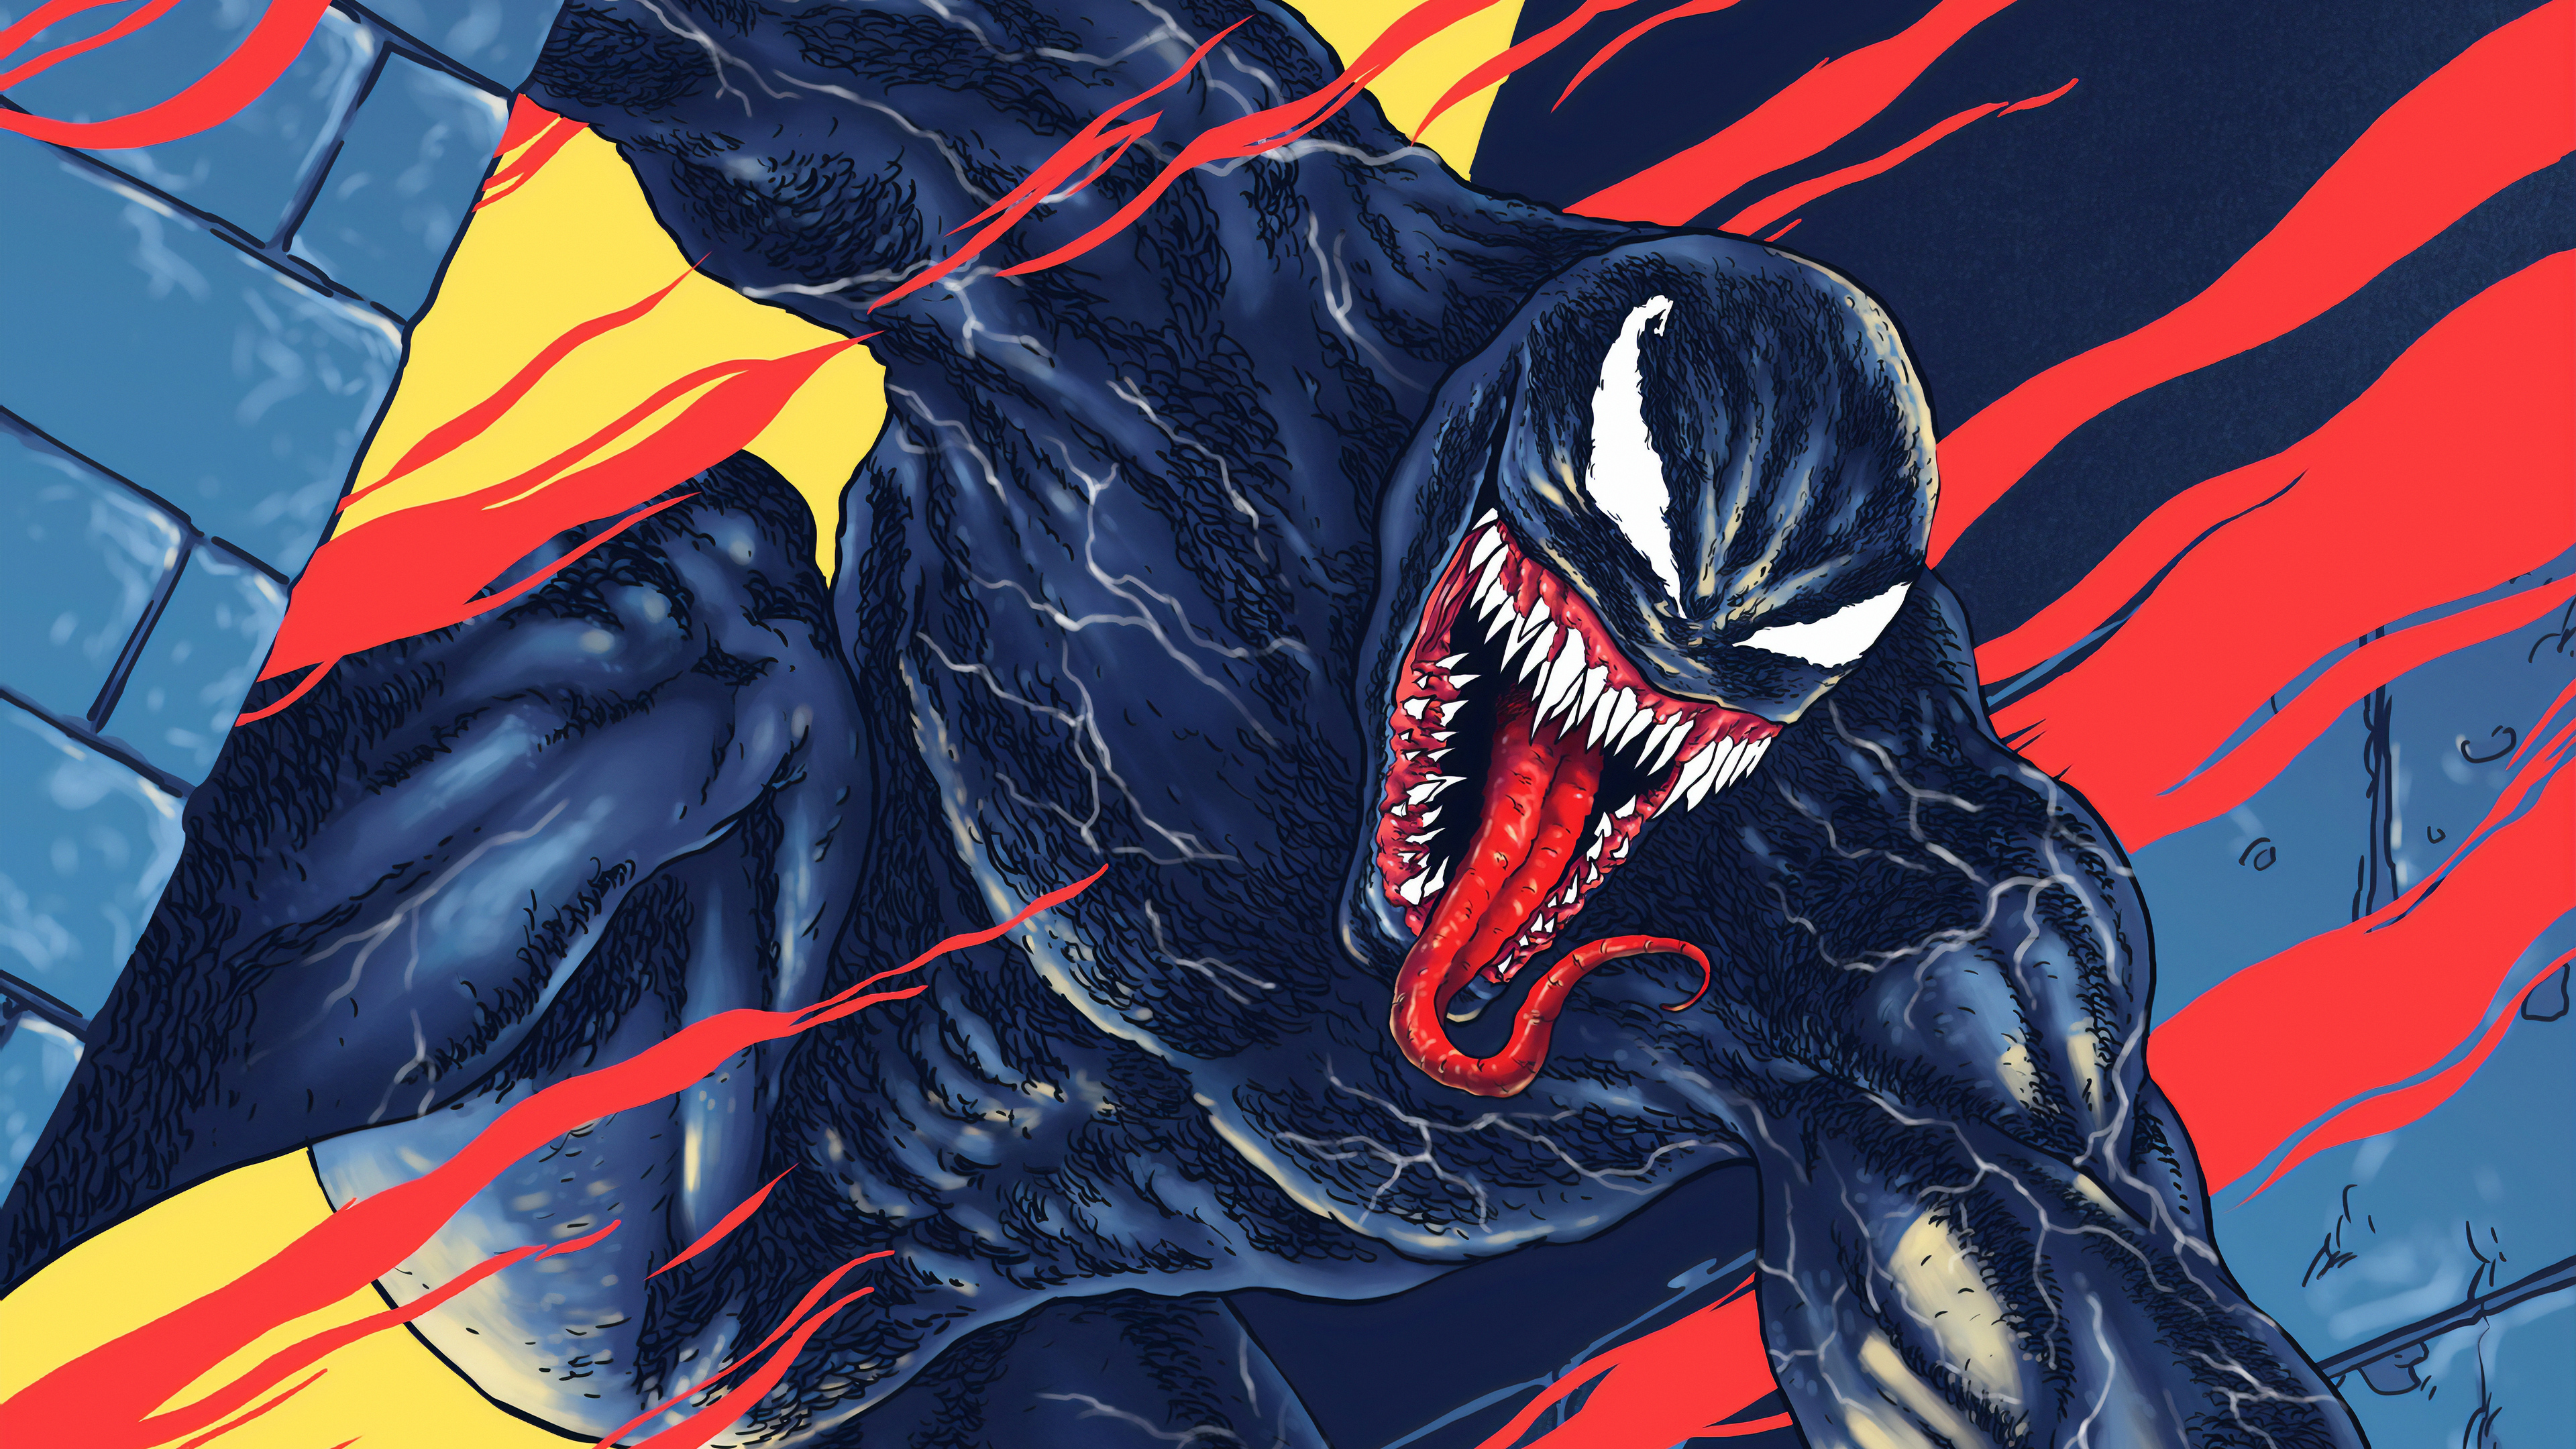 Để tận hưởng vẻ đẹp hoàn hảo và sắc nét nhất của Venom, Venom Ultra HD wallpaper sẽ khiến bạn bất ngờ với chất lượng hình ảnh tuyệt vời. Cài đặt ngay và đắm chìm trong thế giới siêu anh hùng cực đỉnh của Venom.